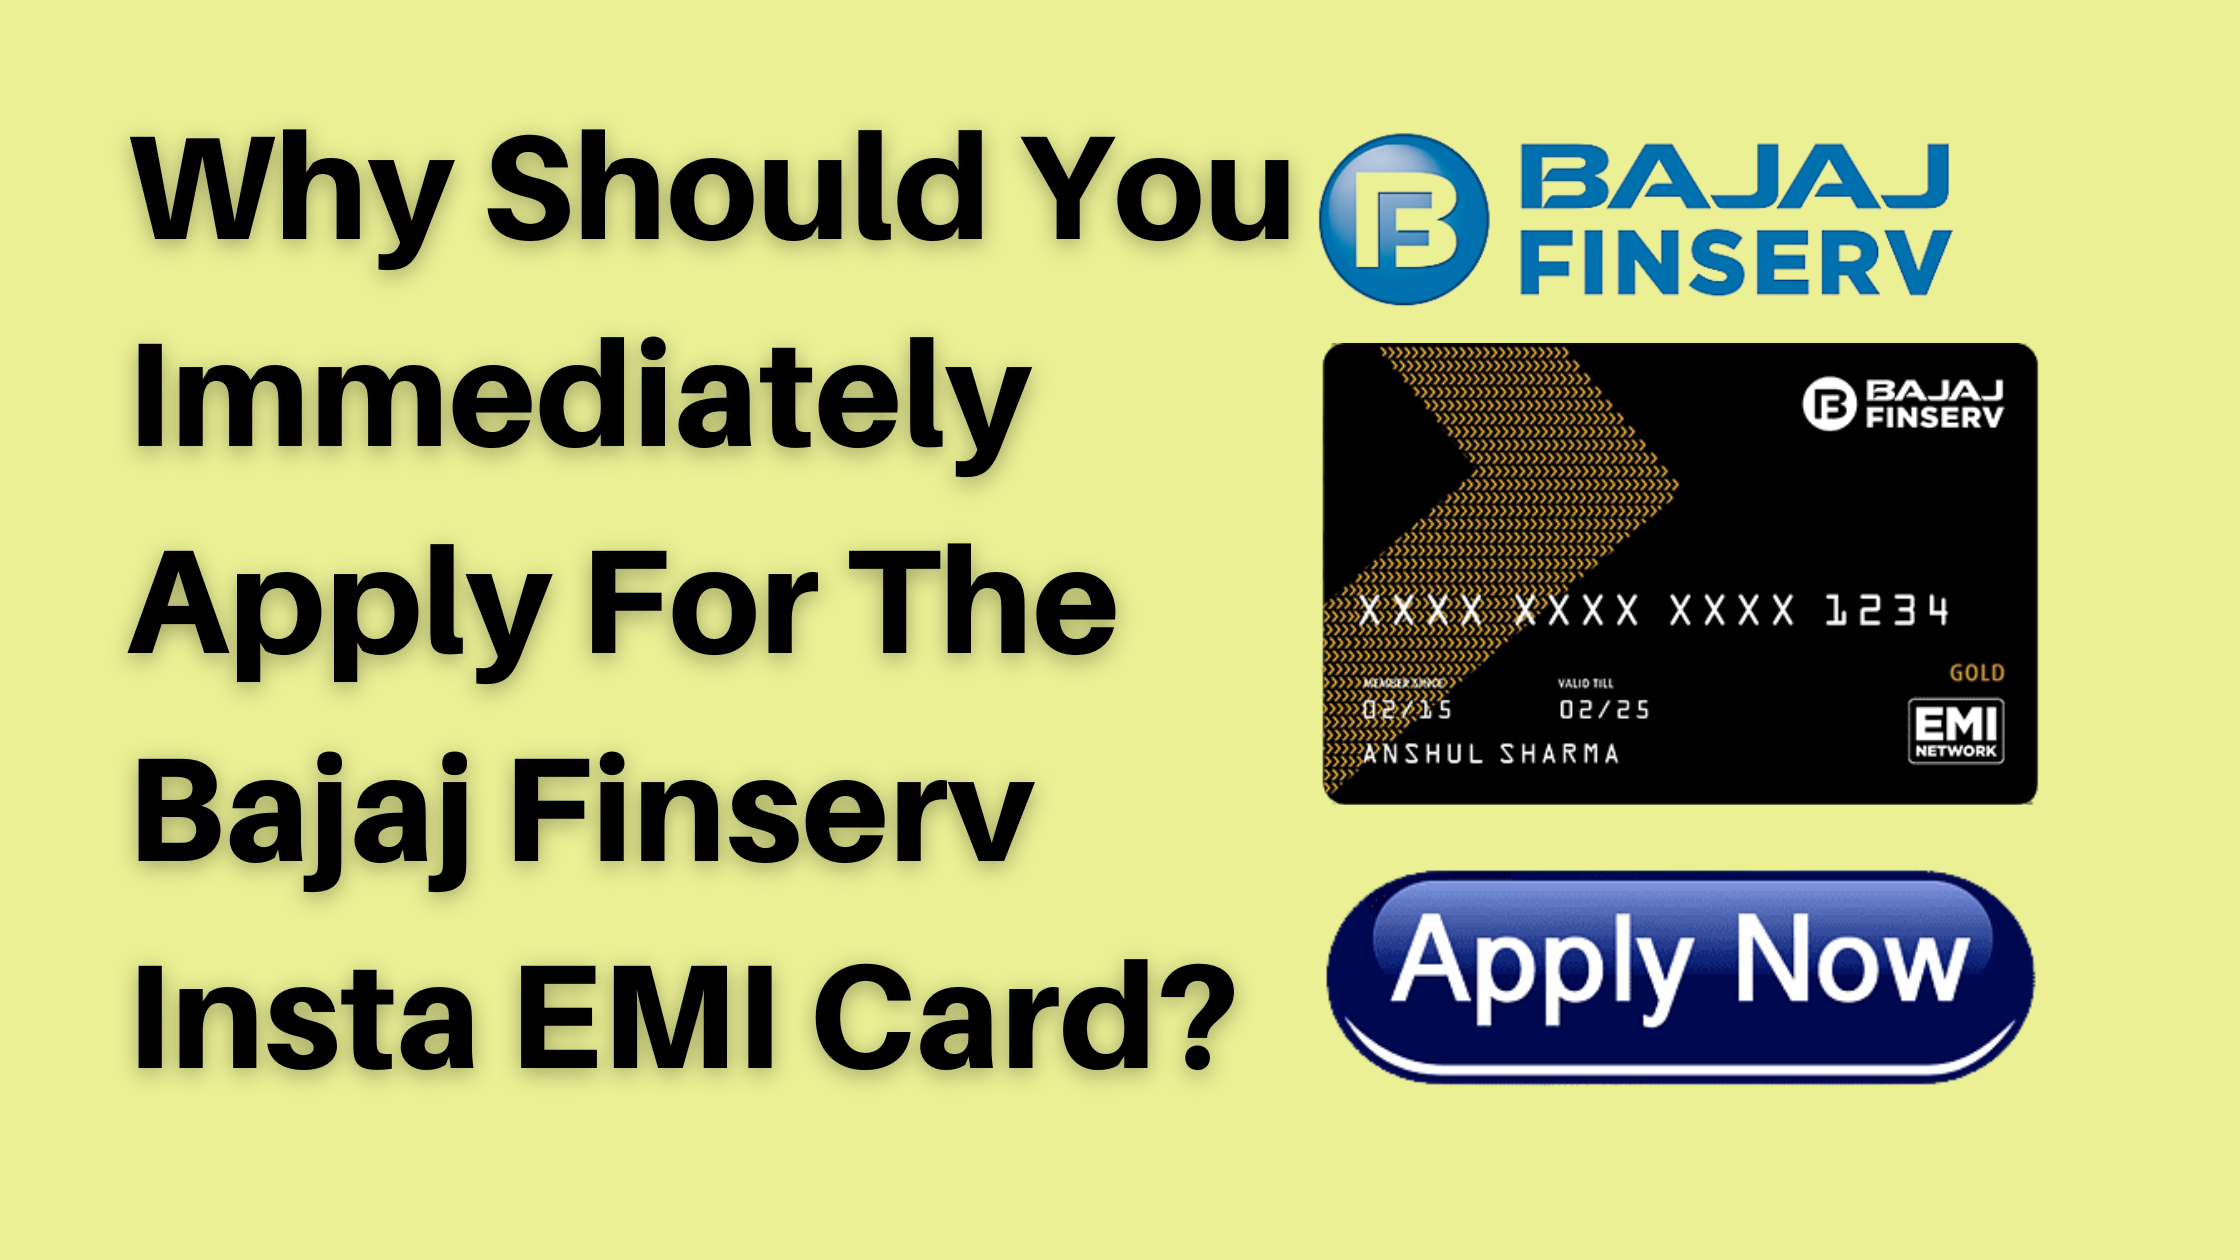 Apply For The Bajaj Finserv Insta EMI Card